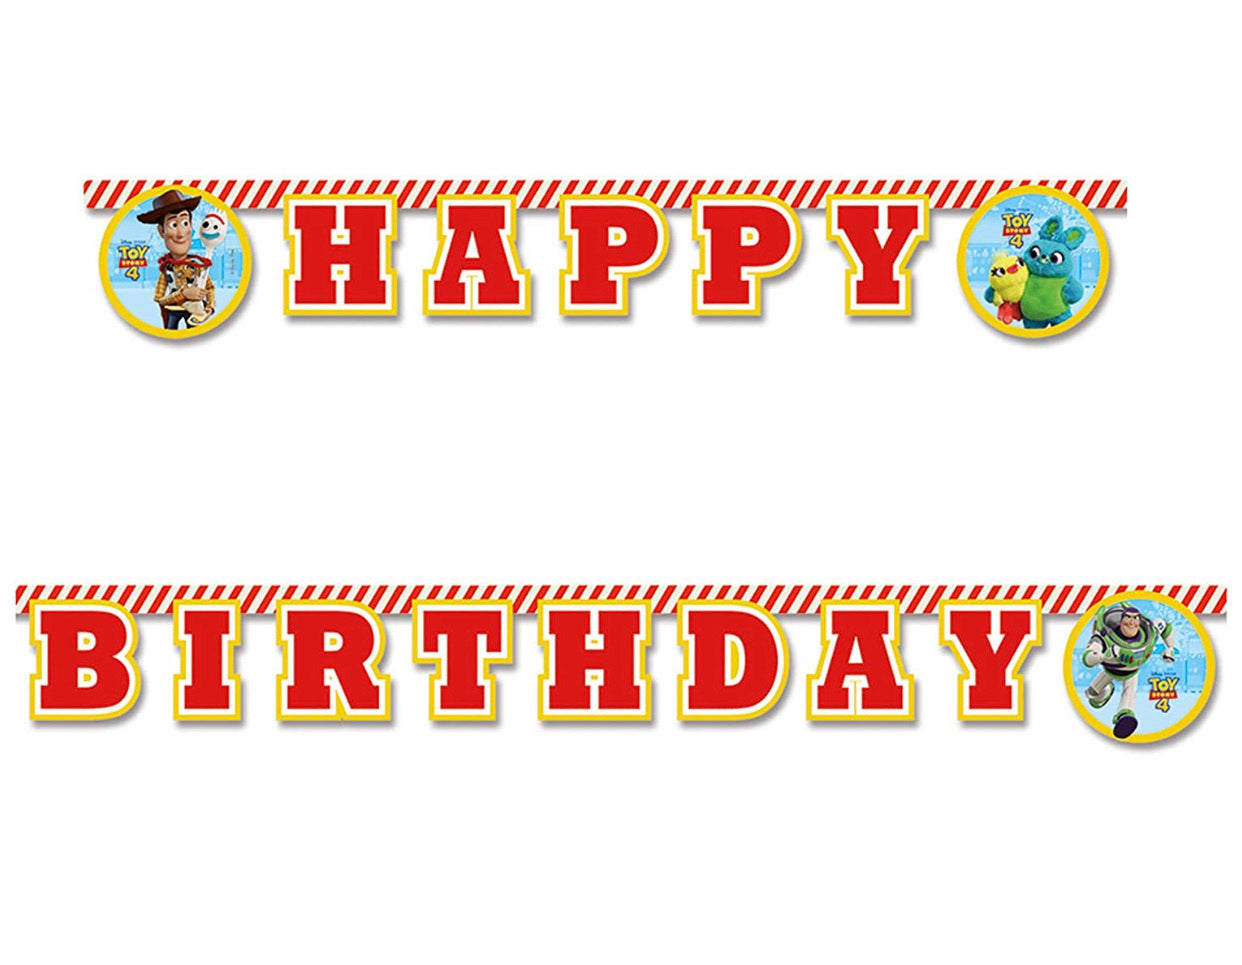 Toy Story Happy Birthday Banner